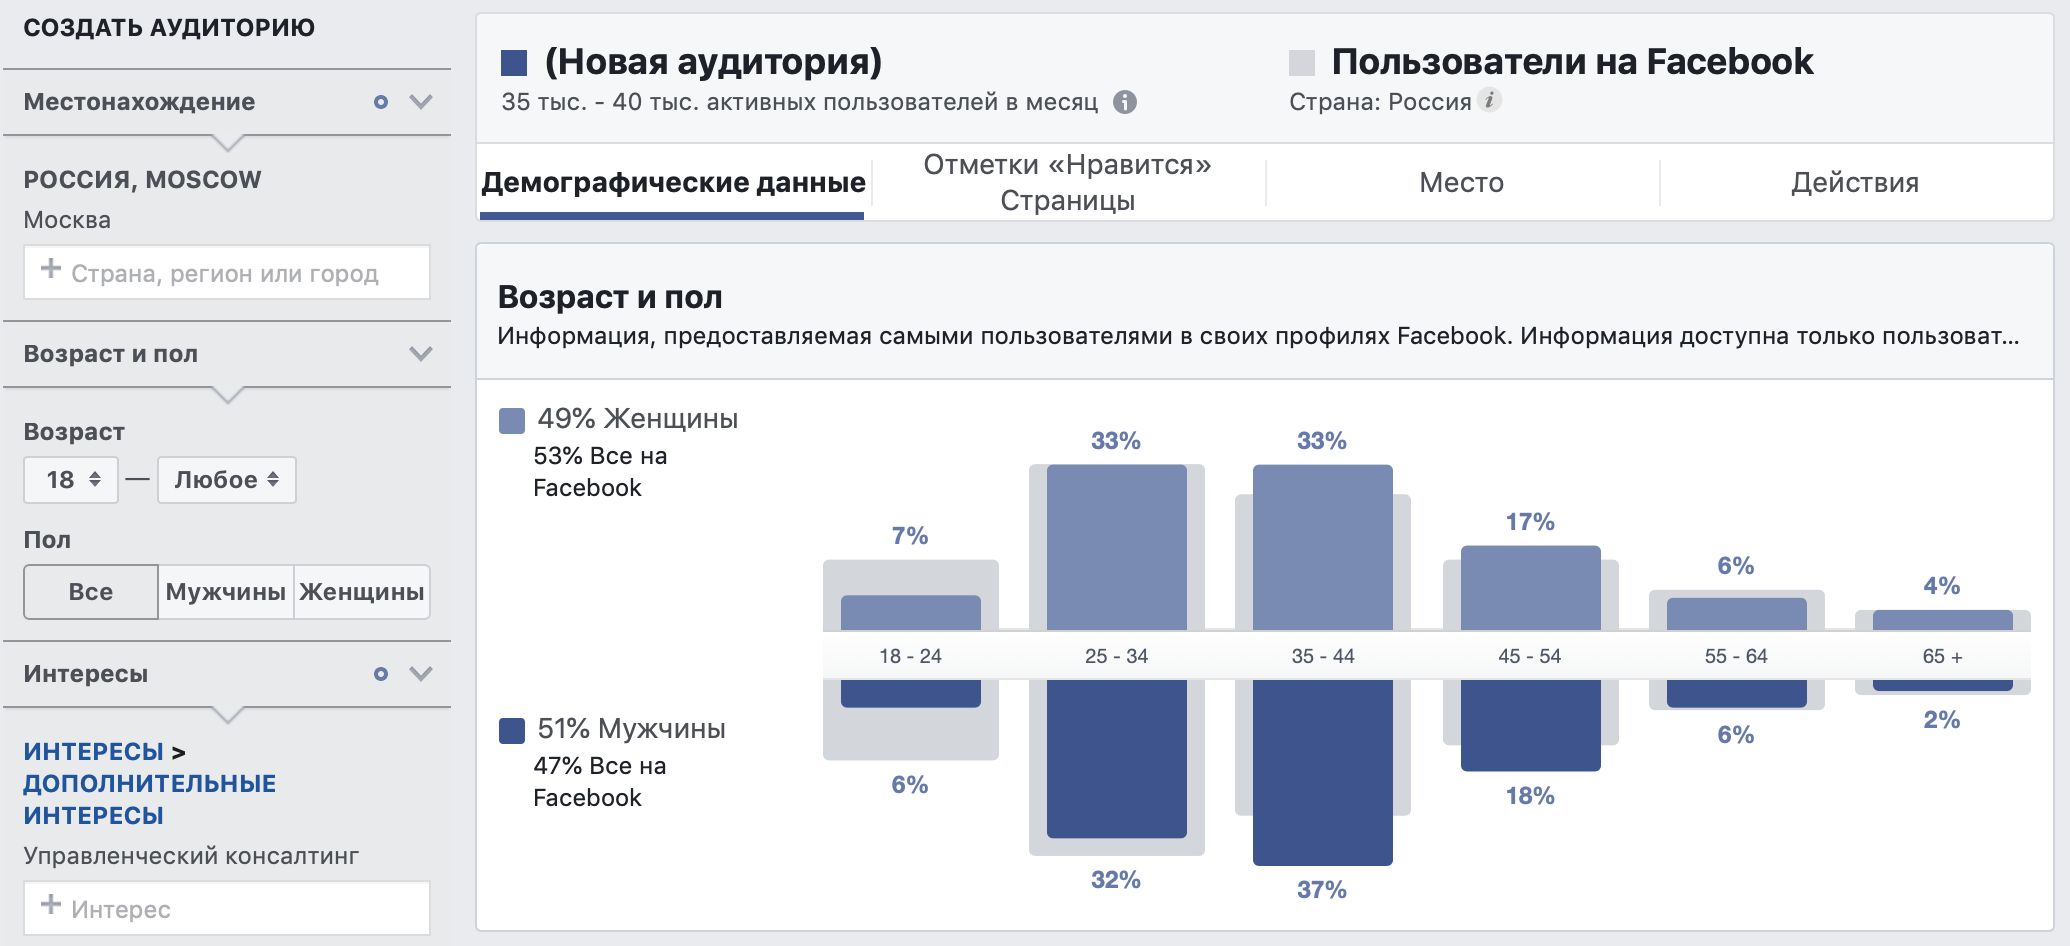 Аудитория Фейсбук